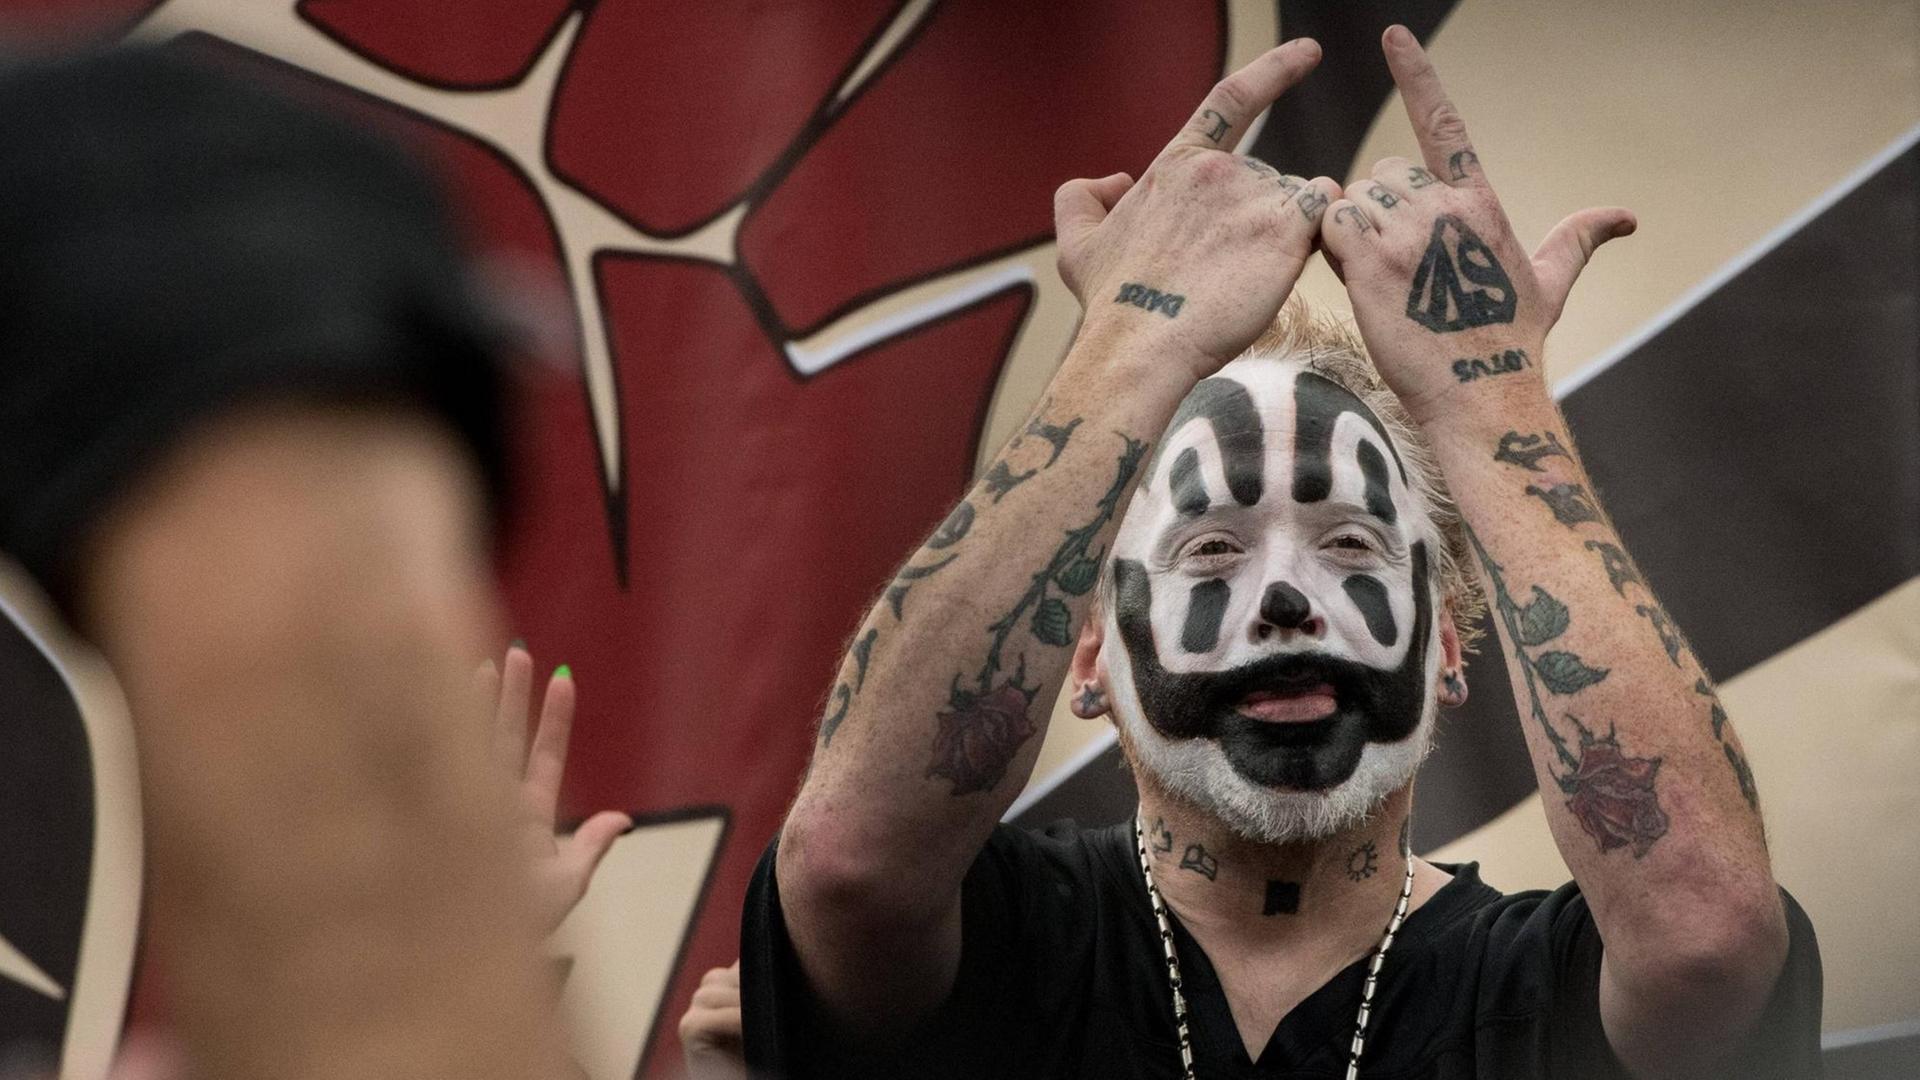 Fans der Band Insane Clown Posse – eine Clown-Horror-Rap-Band aus Detroit - beim "Marsch auf Washington" am 16. September 2017. Wegen der oftmals kriminellen Aktivitäten ihrer Fans galt die Band zwischenzeitlich als kriminelle Vereinigung und wurde vom FBI beobachtet.